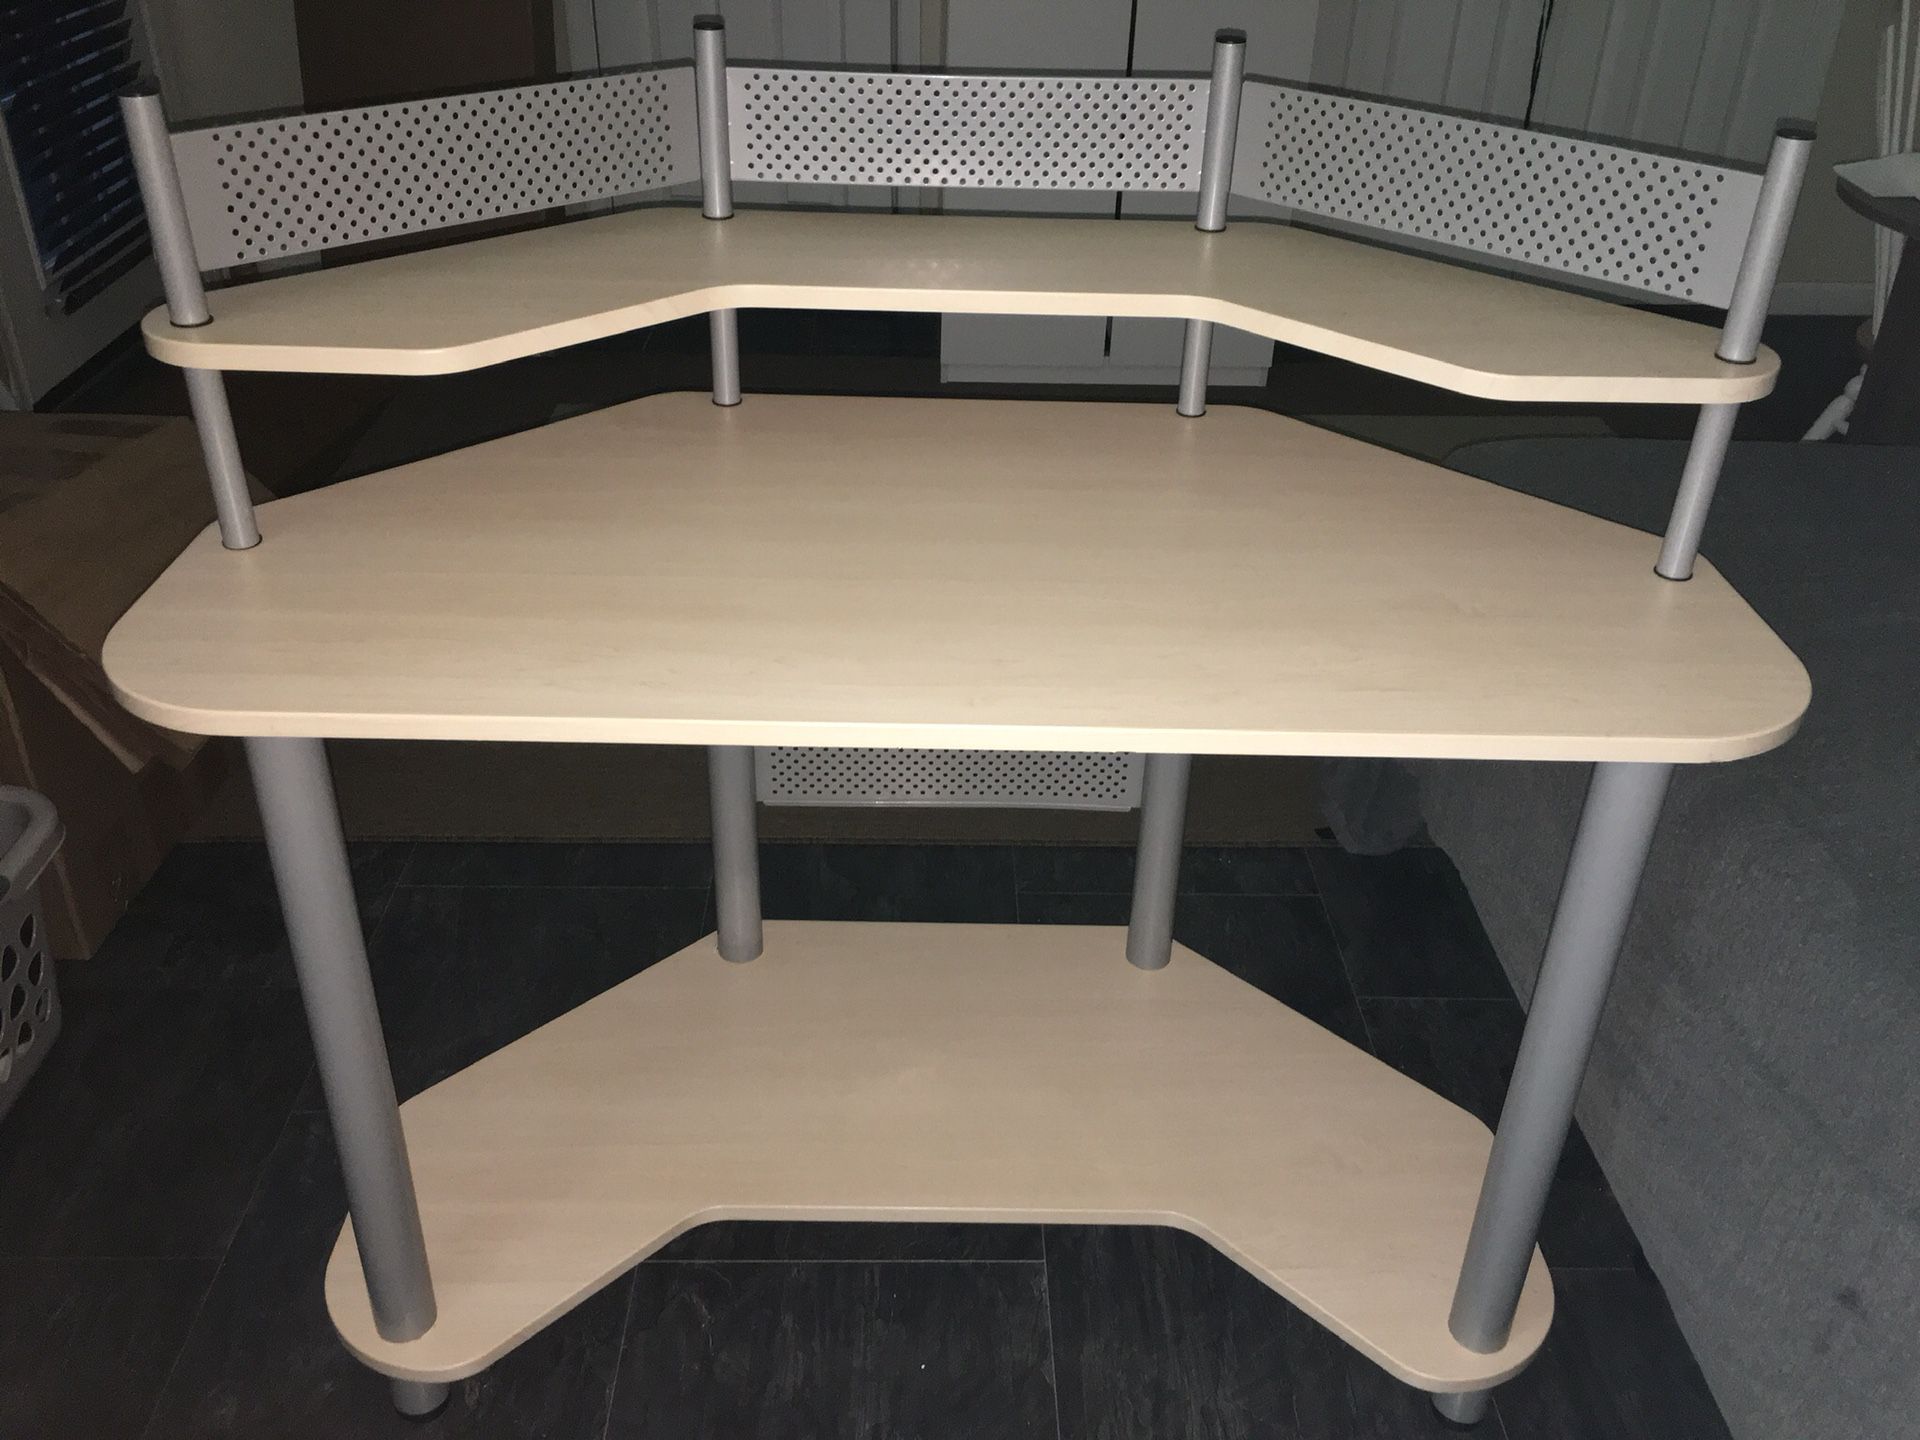 Calico Designs 55124 Study Corner Desk, Silver with Maple